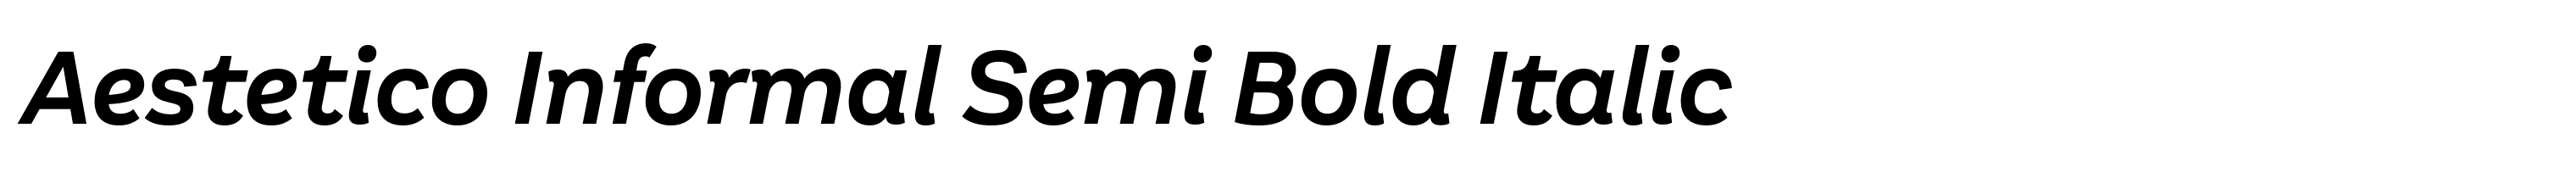 Aestetico Informal Semi Bold Italic